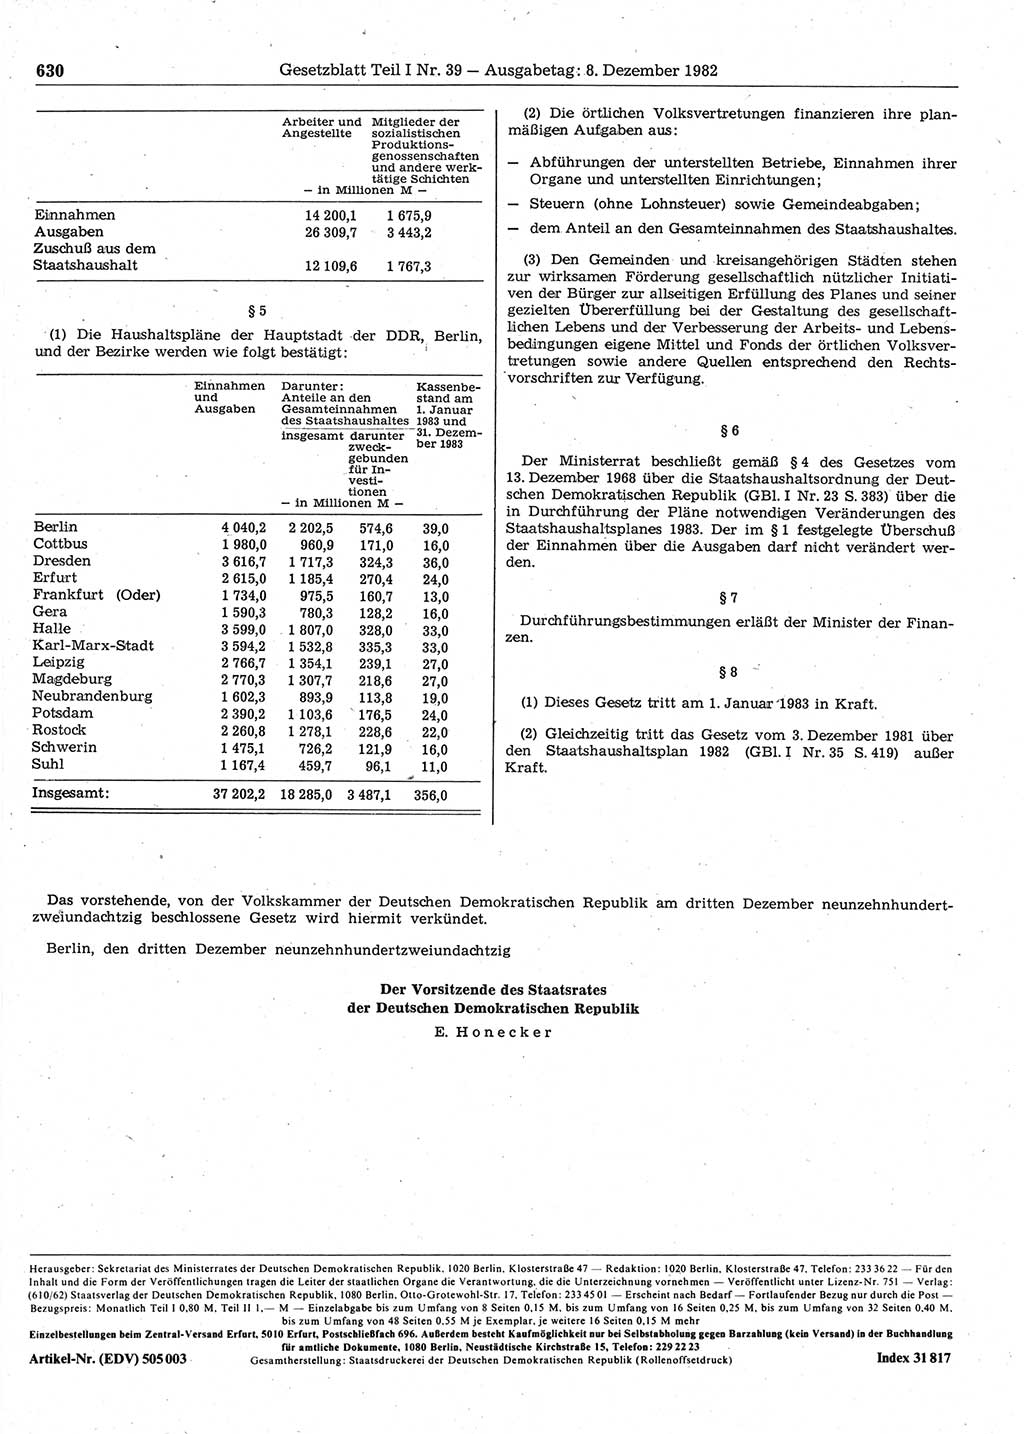 Gesetzblatt (GBl.) der Deutschen Demokratischen Republik (DDR) Teil Ⅰ 1982, Seite 630 (GBl. DDR Ⅰ 1982, S. 630)